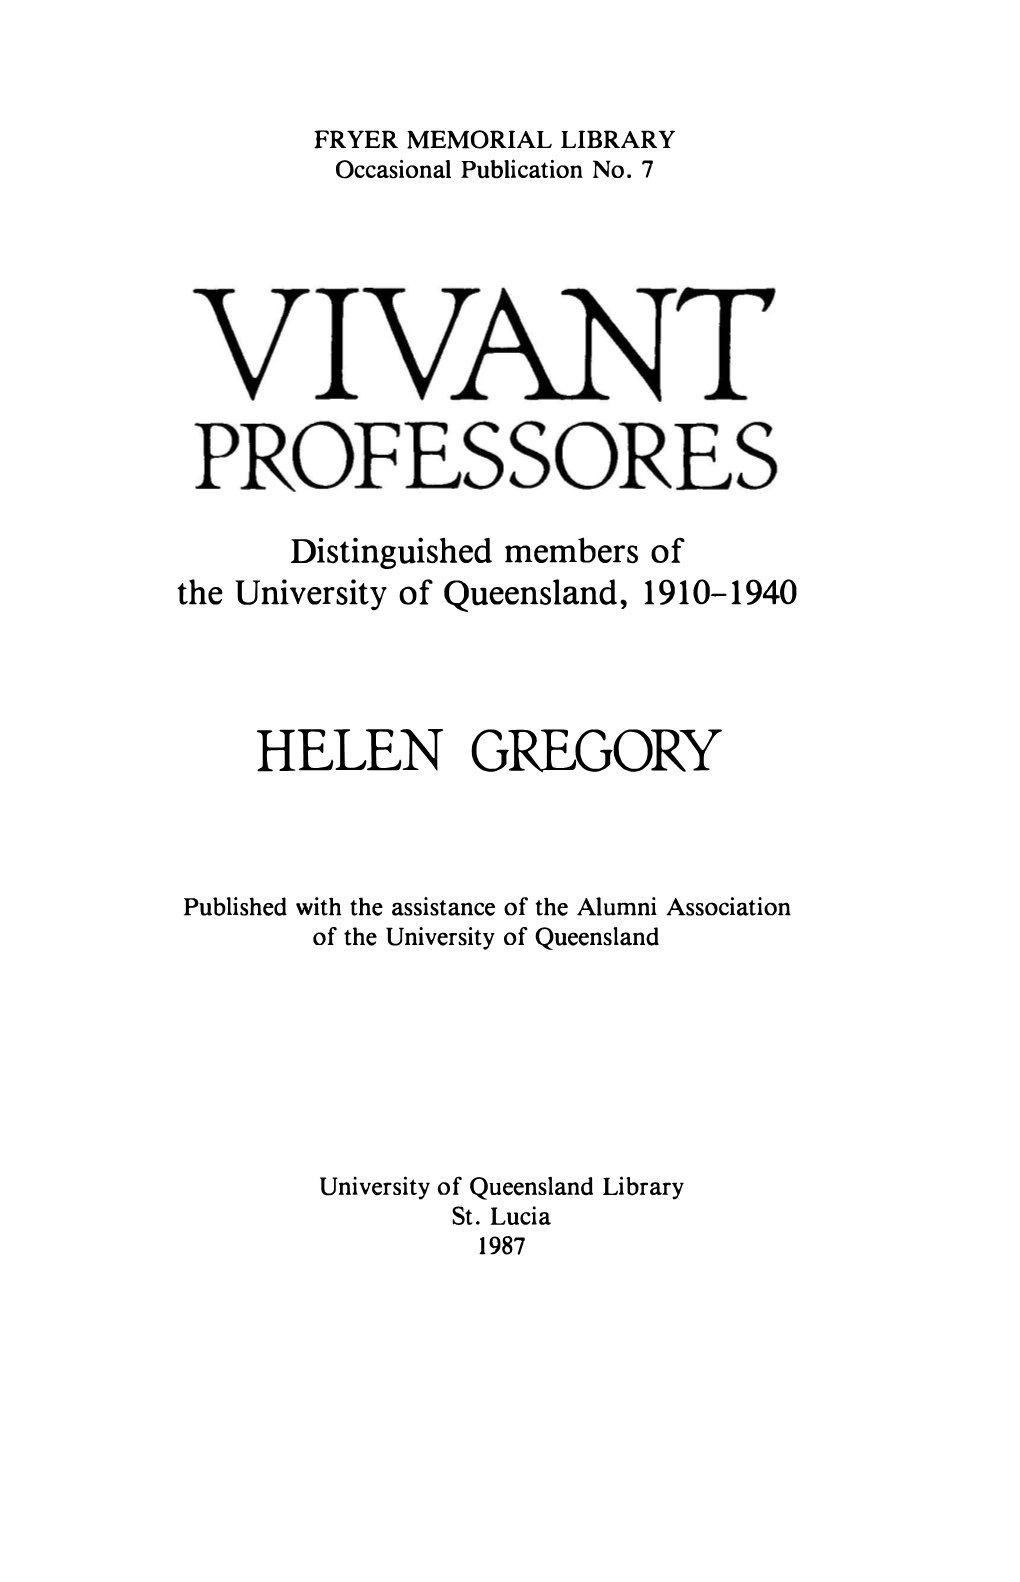 Helen Gregory